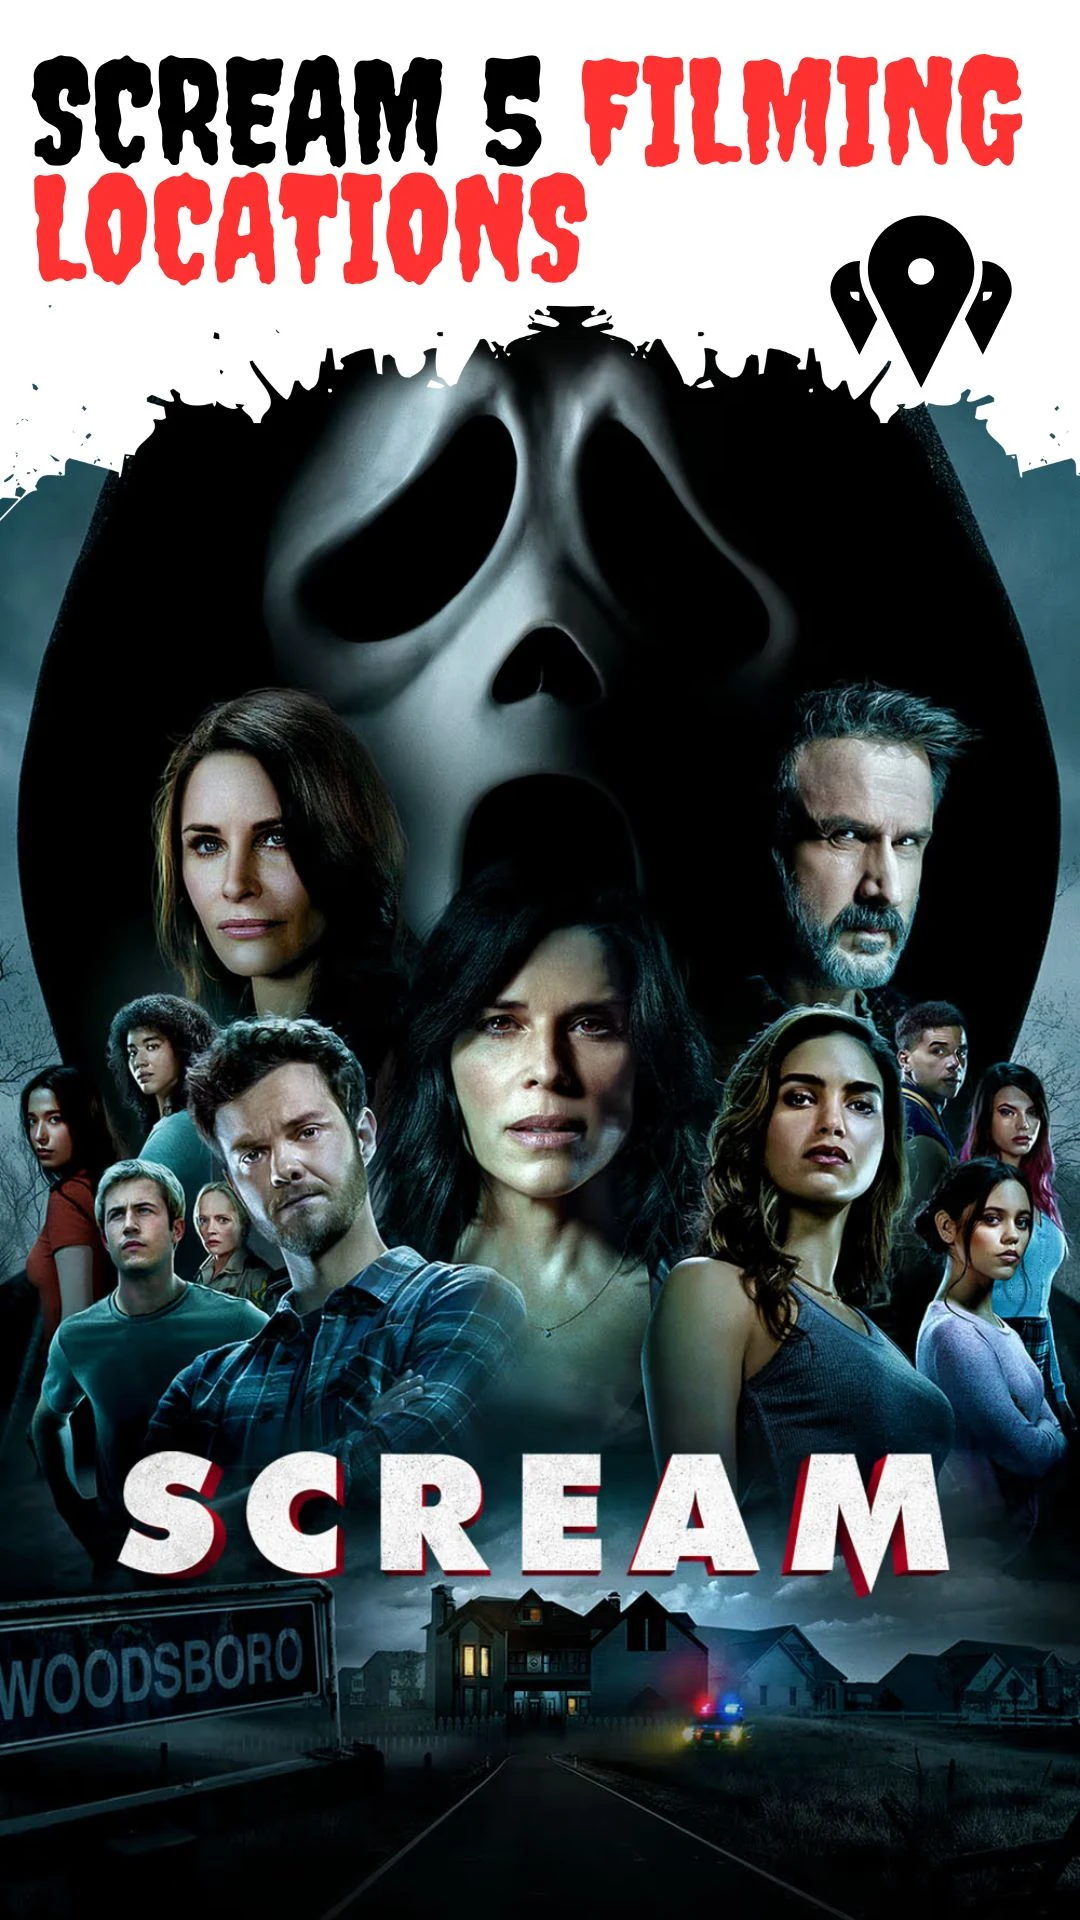 Scream 5 Filming Locations